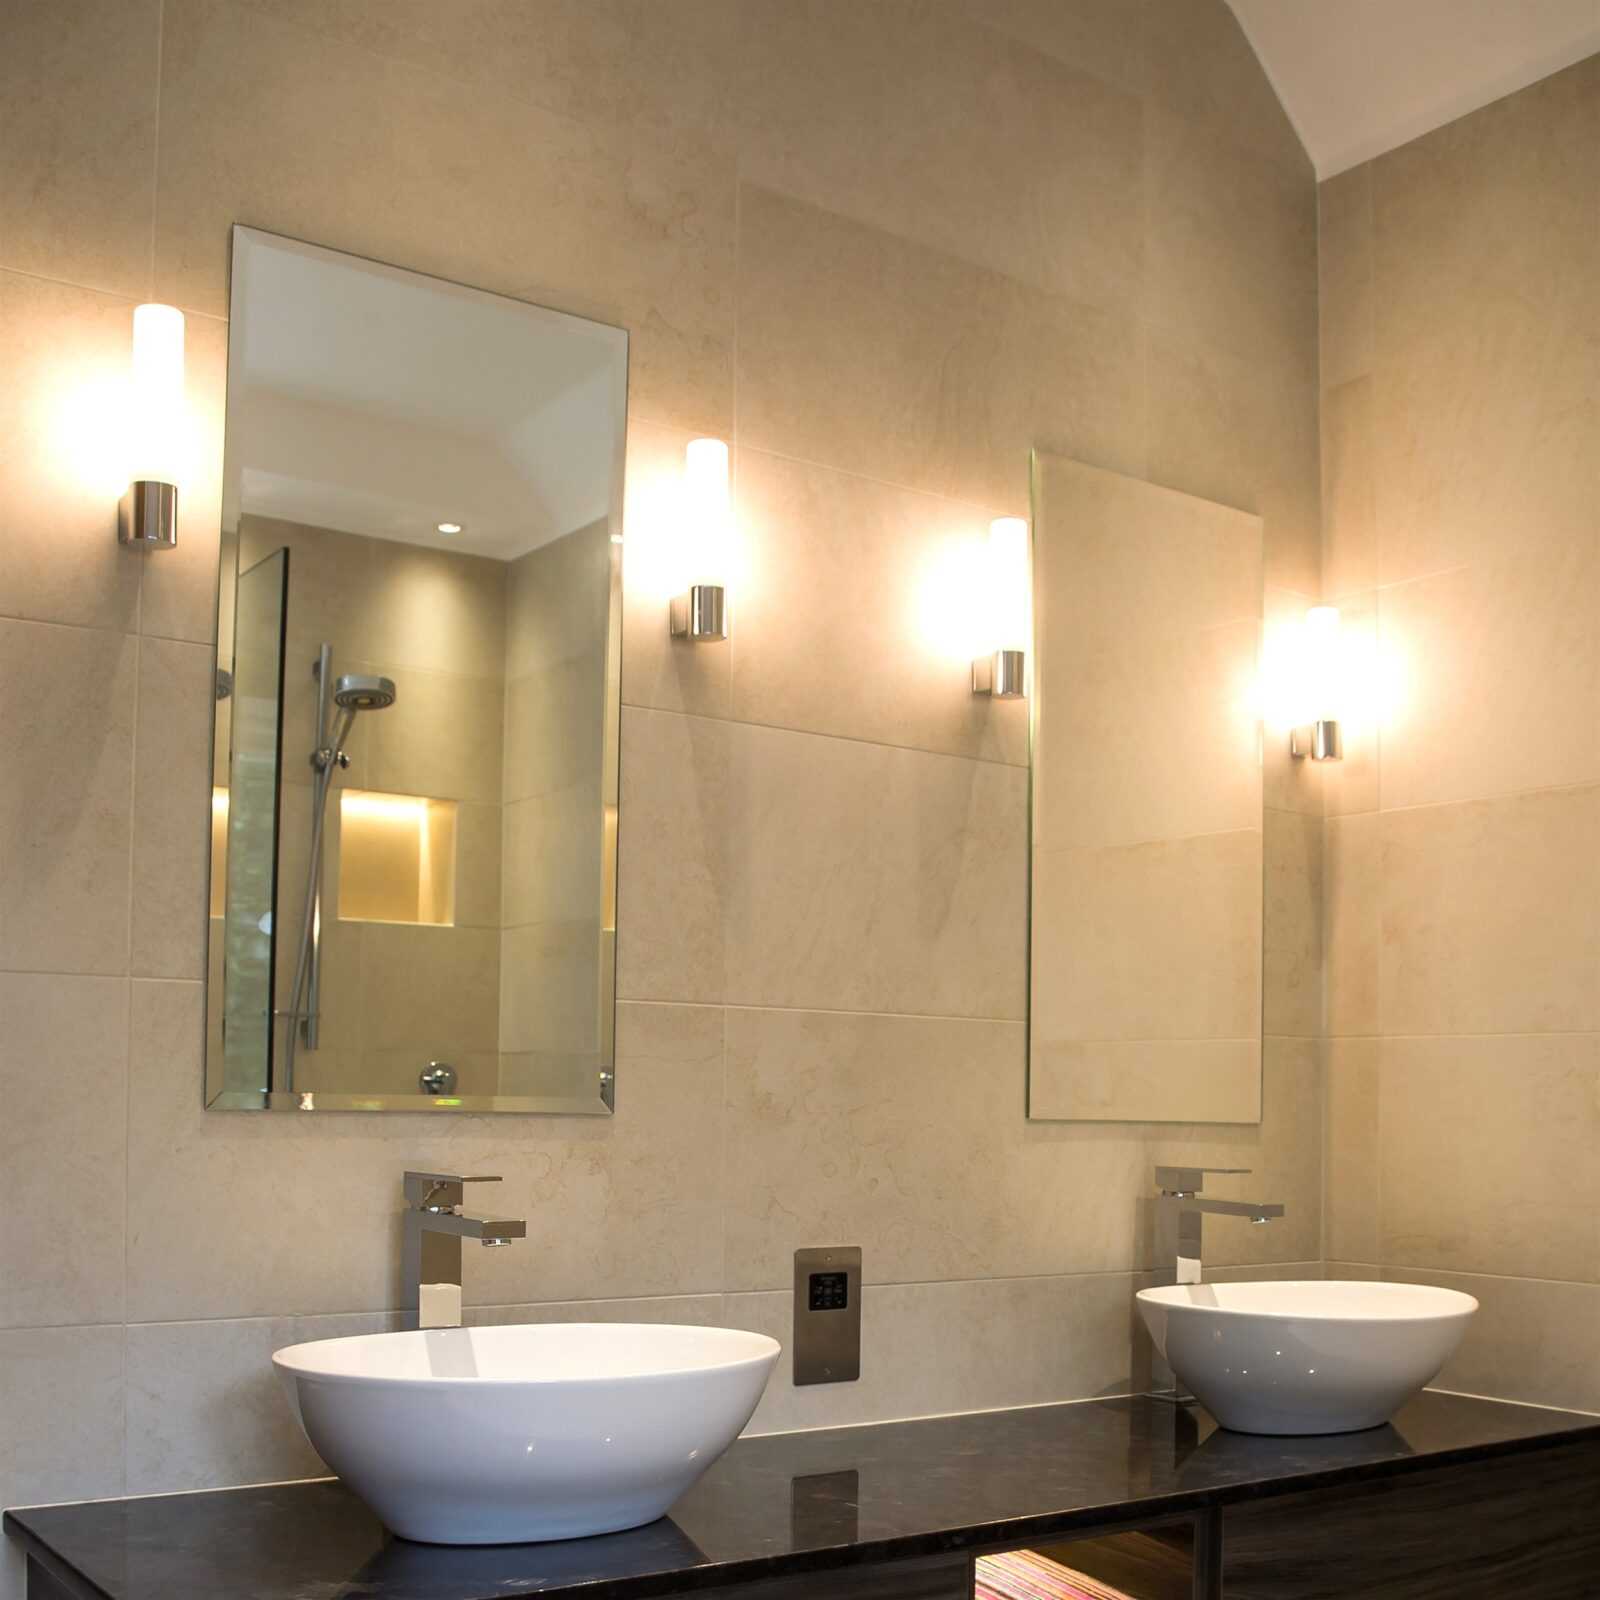 Виды подсветки для зеркала в ванной, варианты установки и подключения 49 - ДиванеТТо